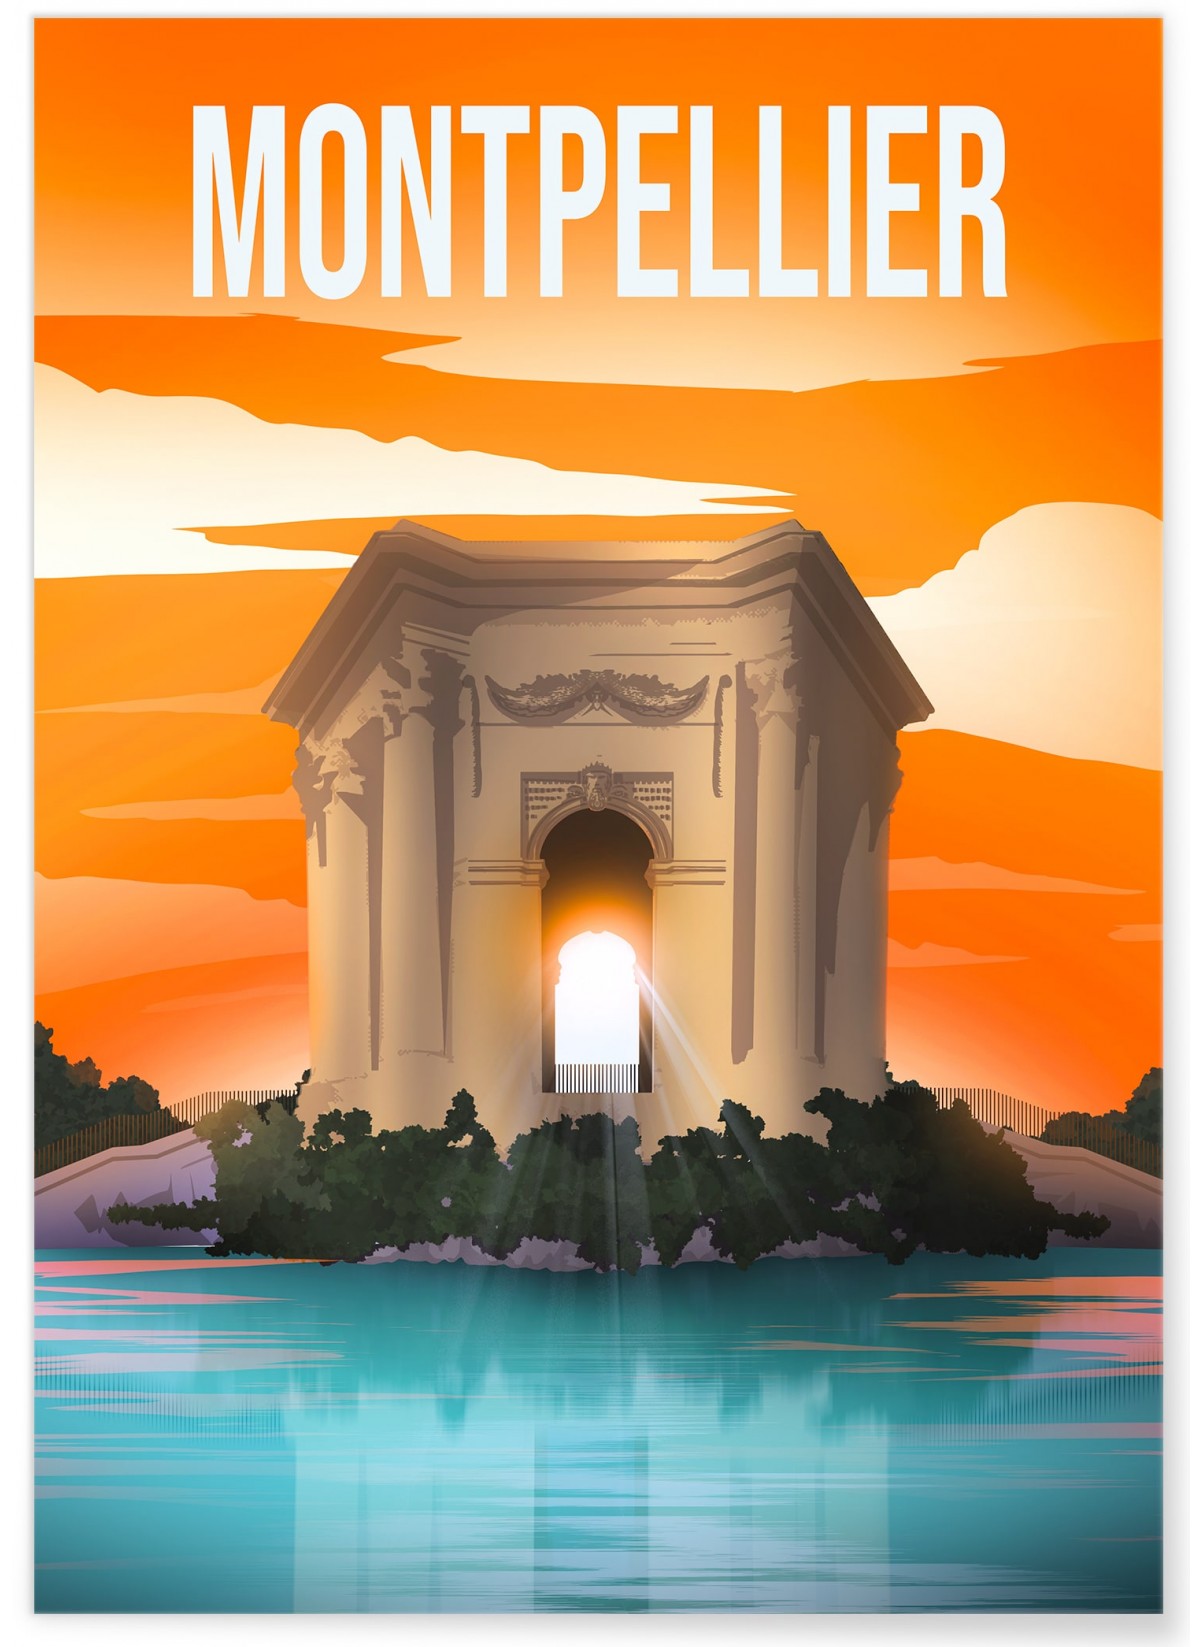 Affiche Montpellier, idée cadeau| L’Afficherie